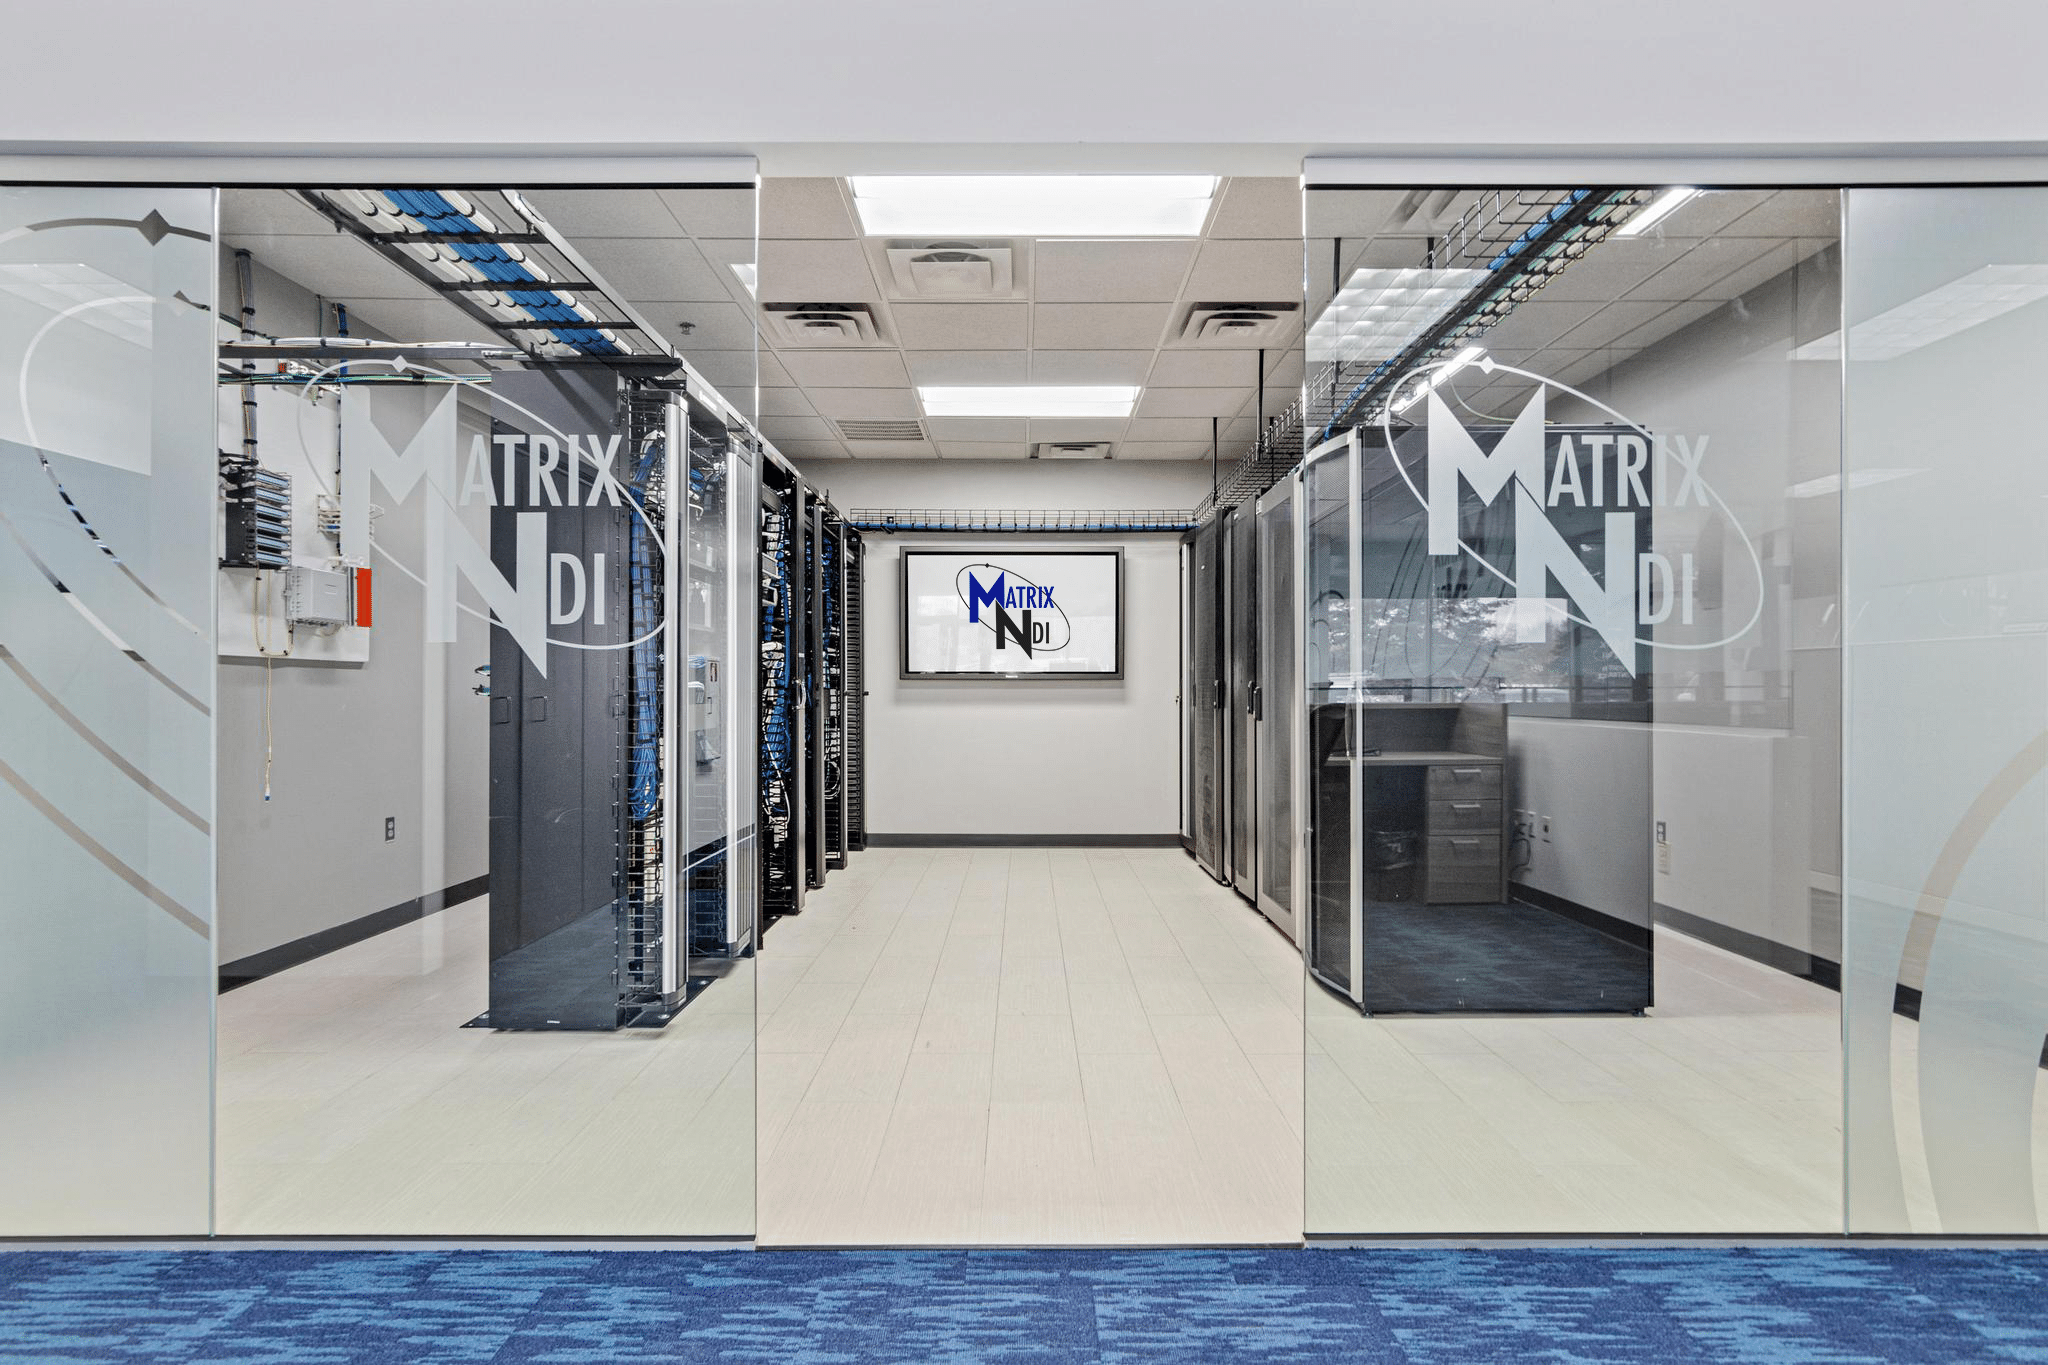 Matrix-NDI front office small datacenter